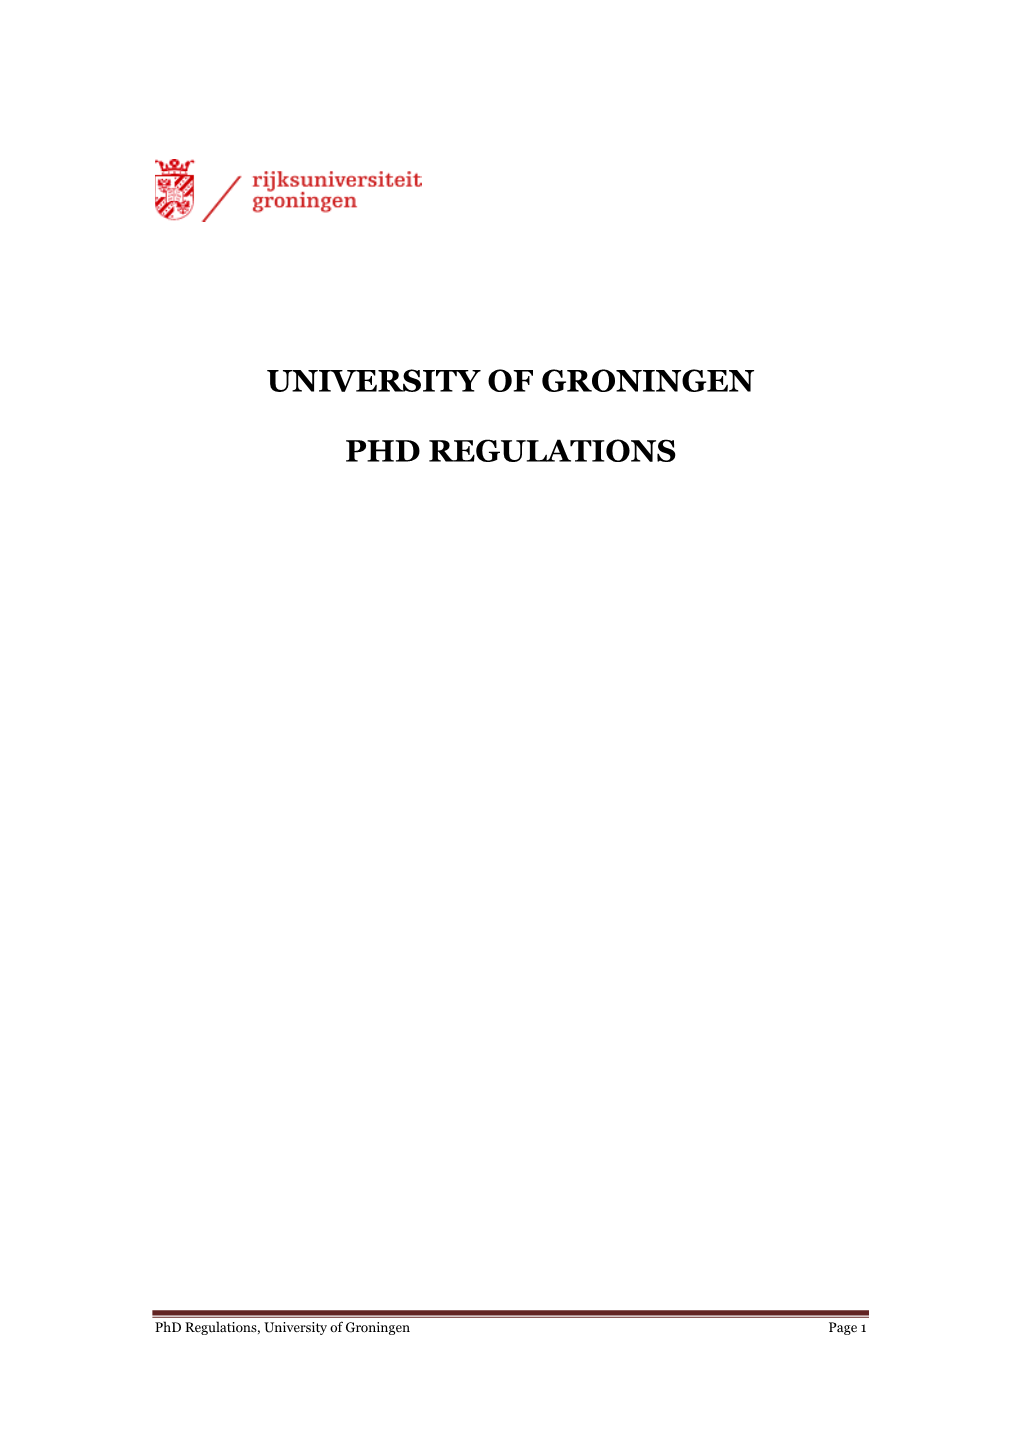 University of Groningen Phd Regulations 2013’, Or ‘Phd Regulations, University of Groningen 2013’